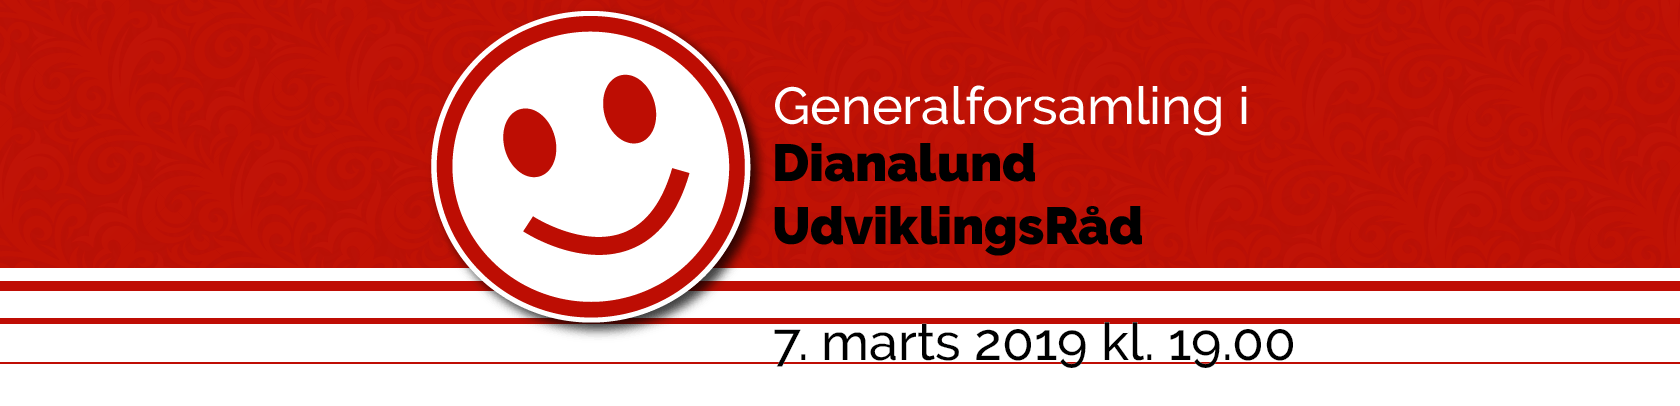 Generalforsamling fro Dianalund Udviklingsråd 2019